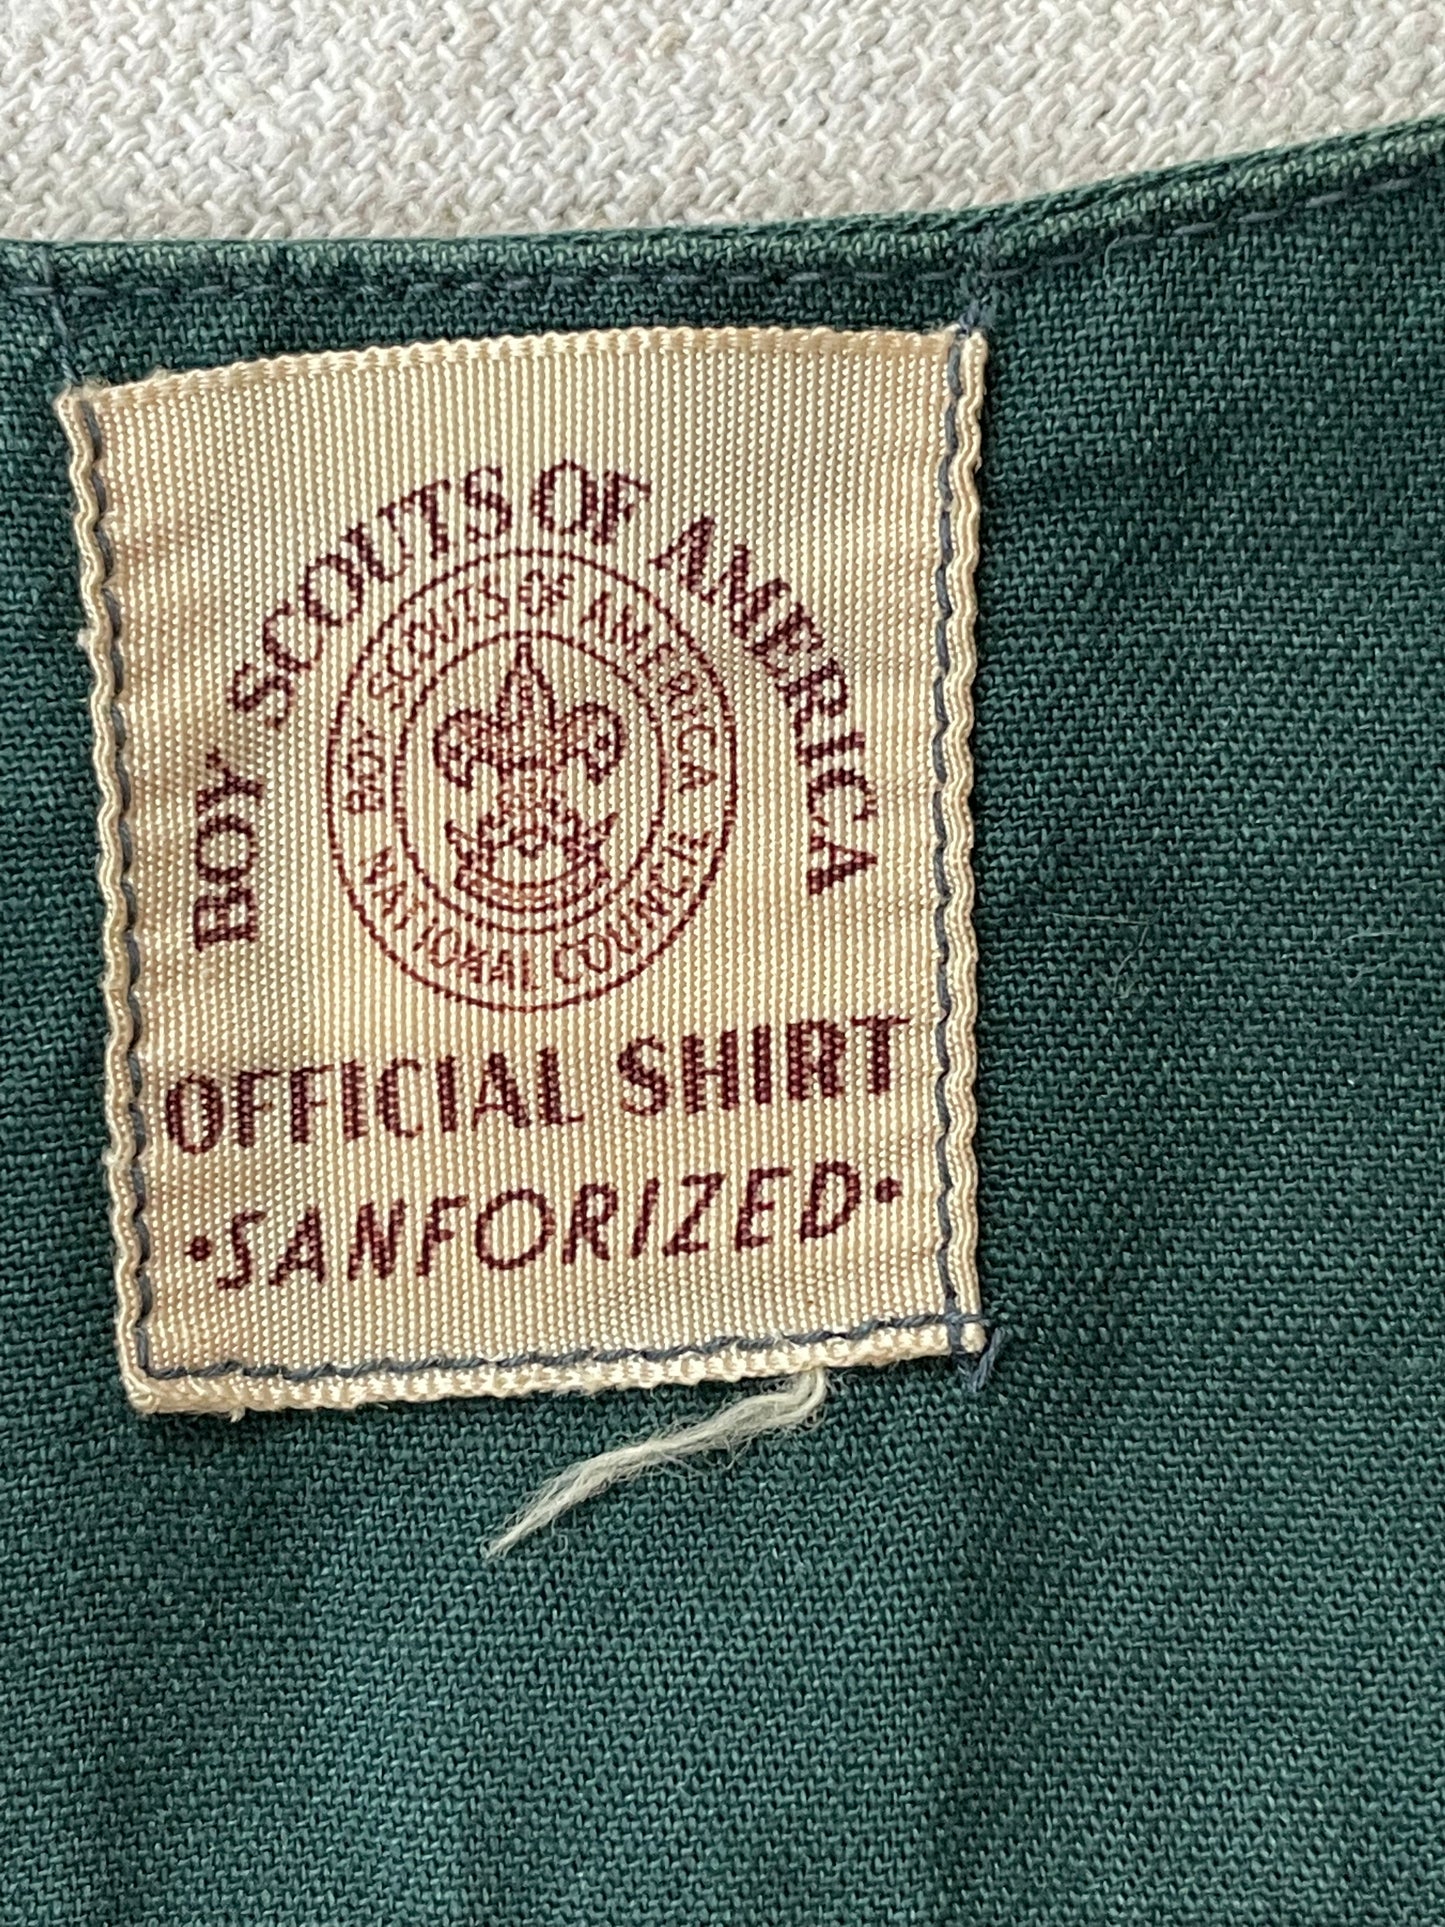 60s BSA Boy Scouts Short Sleeve Button Down Shirt